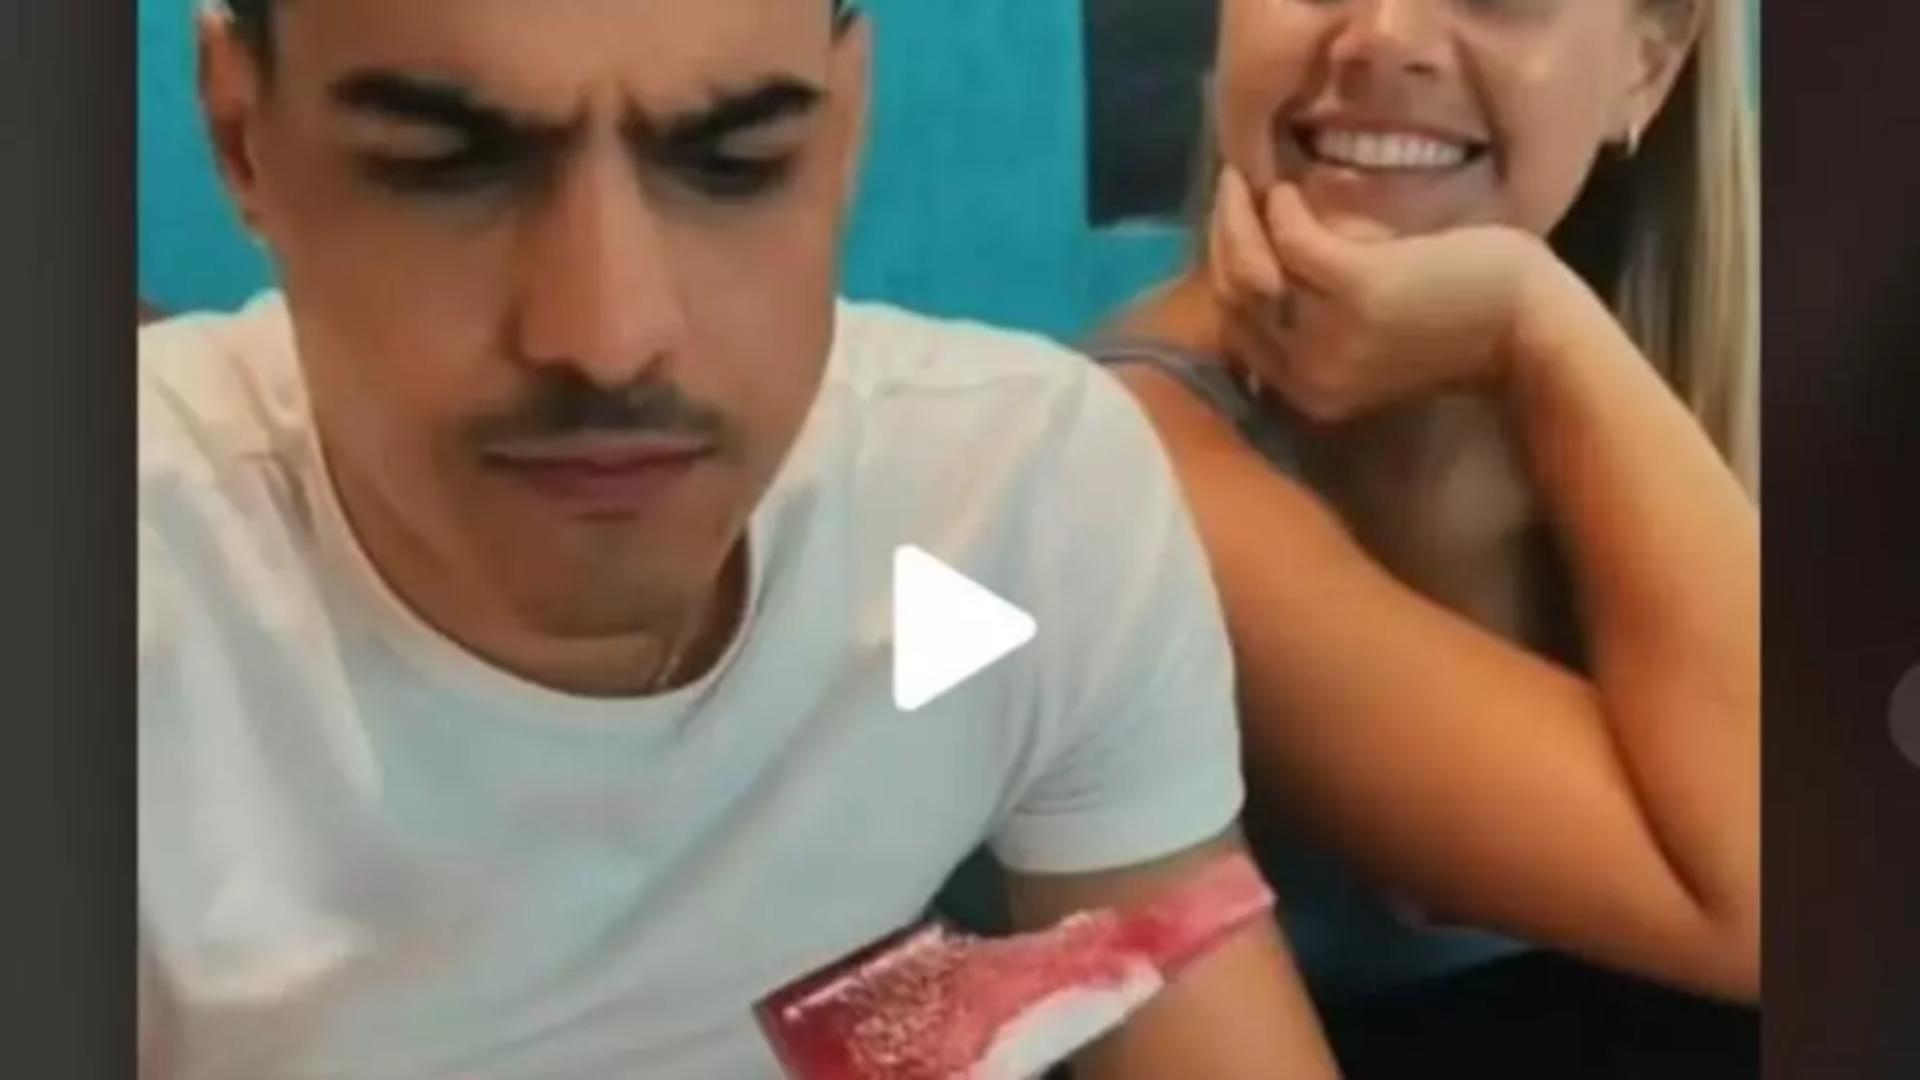 VIDEO – Soția i-a dat să mănânce o înghețată pe un bat ciudat. Când a terminat-o și și-a dat seama ce era, i s-a făcut rău